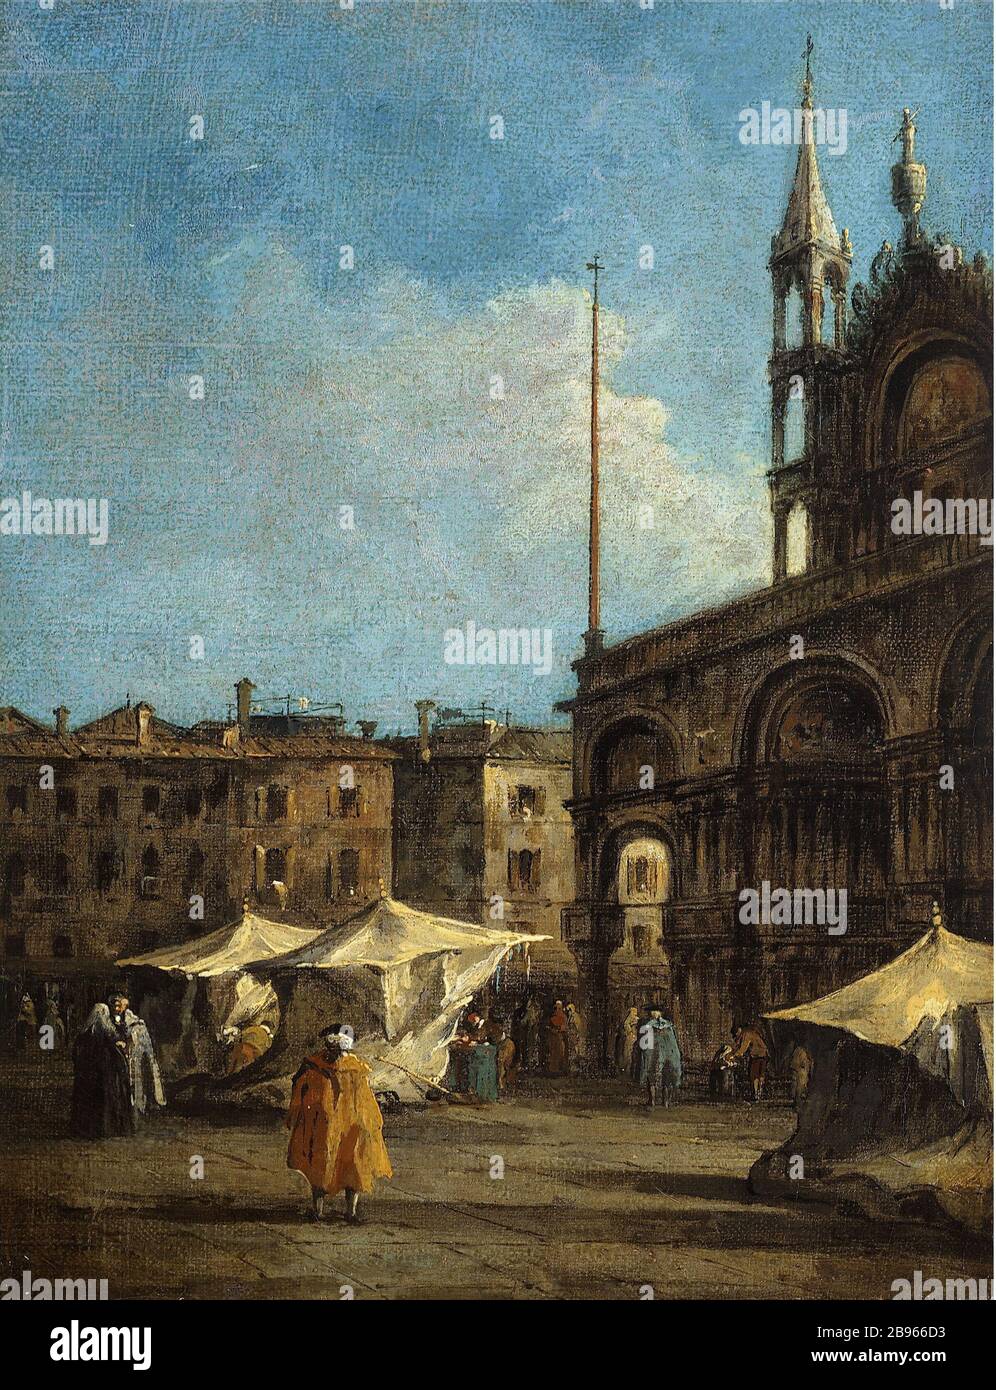 PER LA PLACE SAINT-MARC A VENEZIA FRANCESCO GUARDI (1712-1793). 'Vue de la Place Saint-Marc à Venise, entre 1760 et 1770'. Huile sur toile. Parigi, museo Cognacq-Jay. Foto Stock